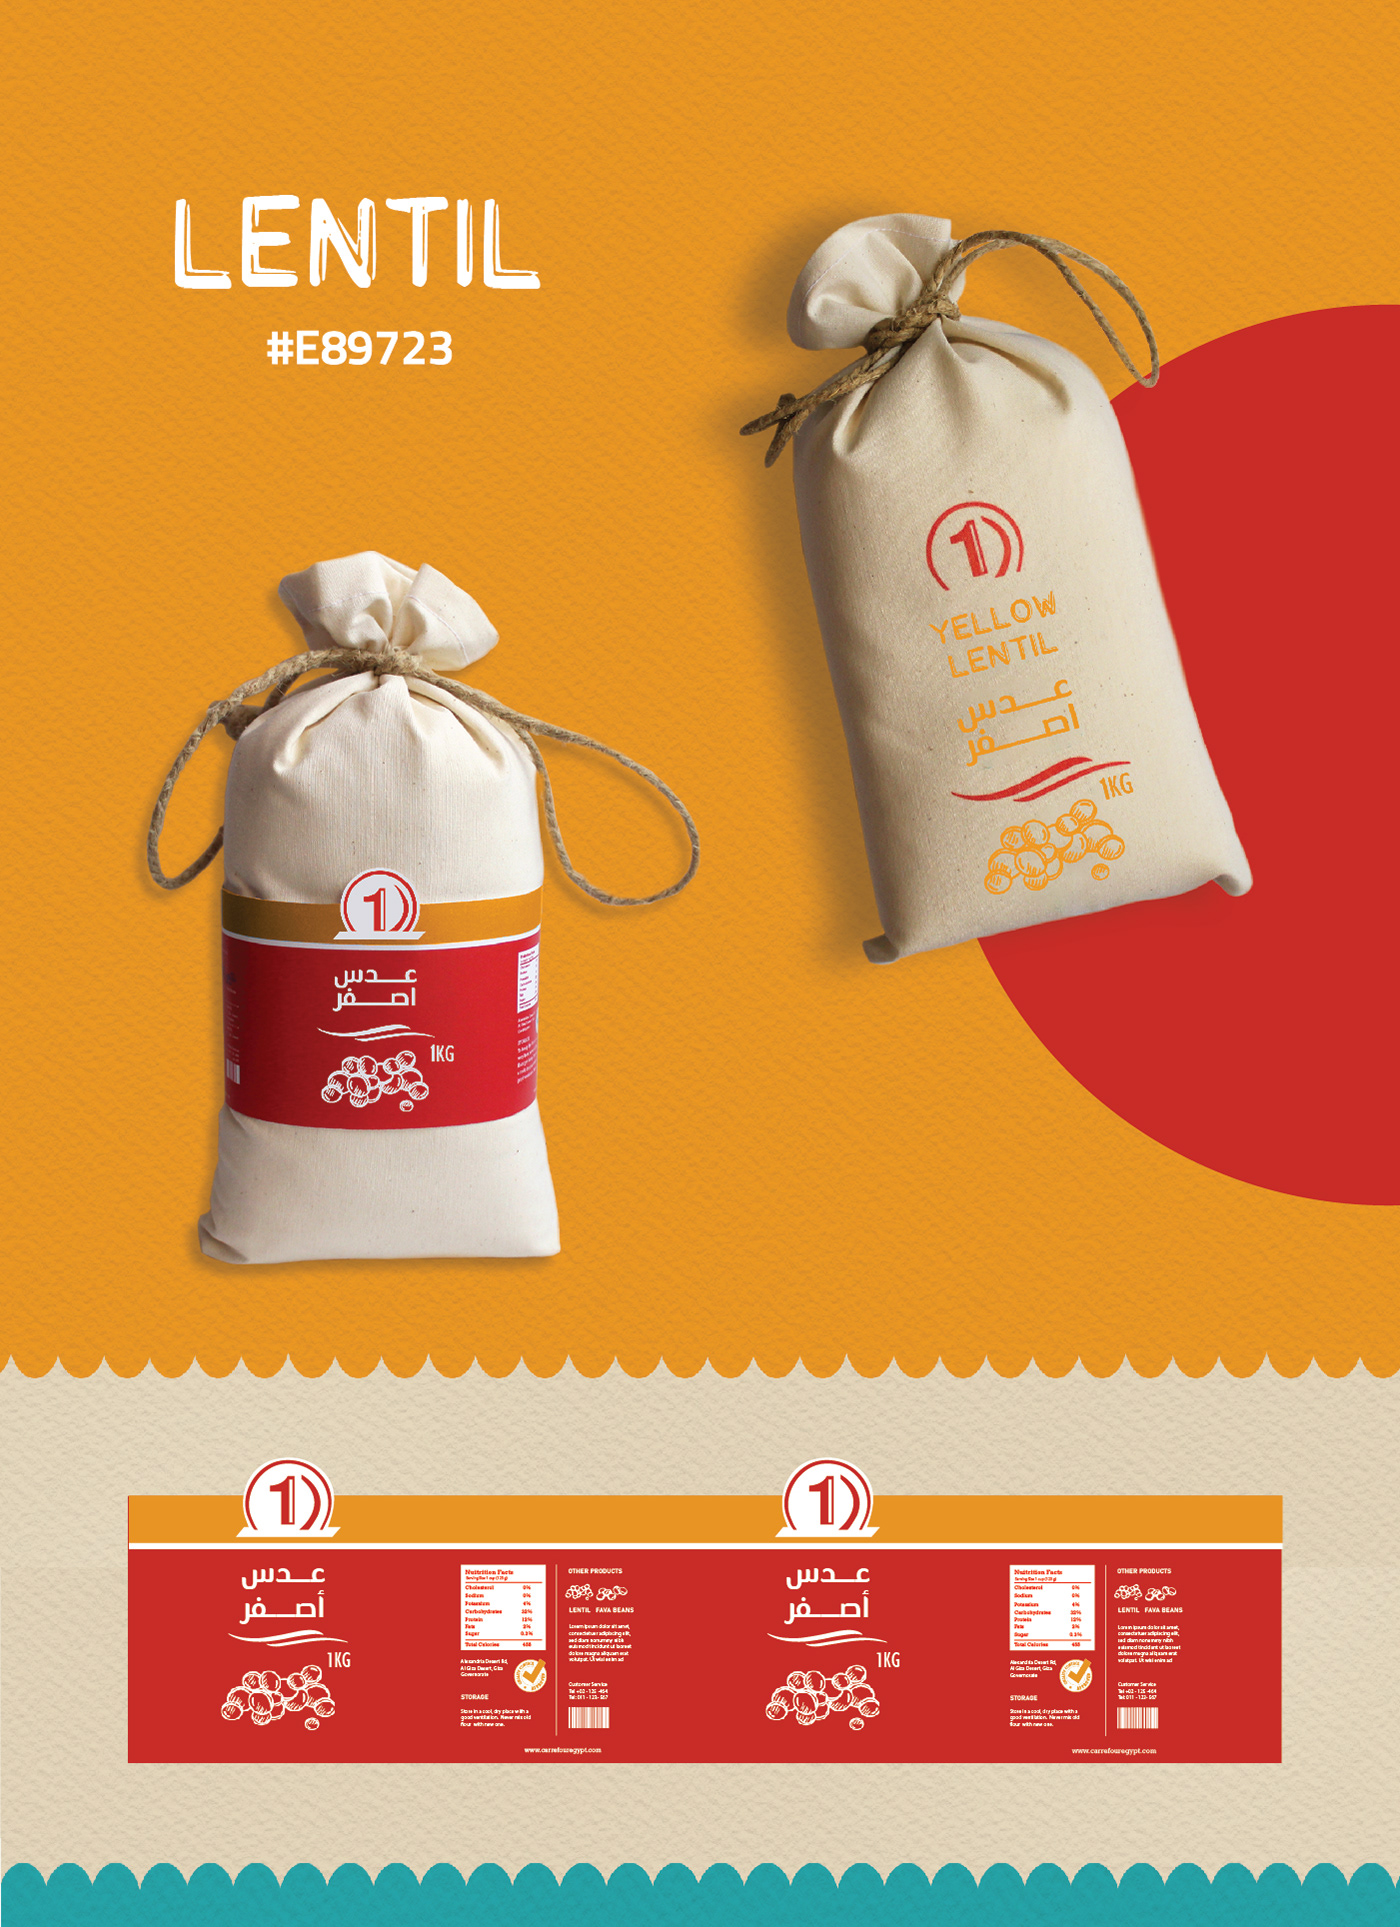 #productdesign beans design EcoFriendlyPack LentilPackaging Packaging ricepack SustainablePack totebag WheatFlour